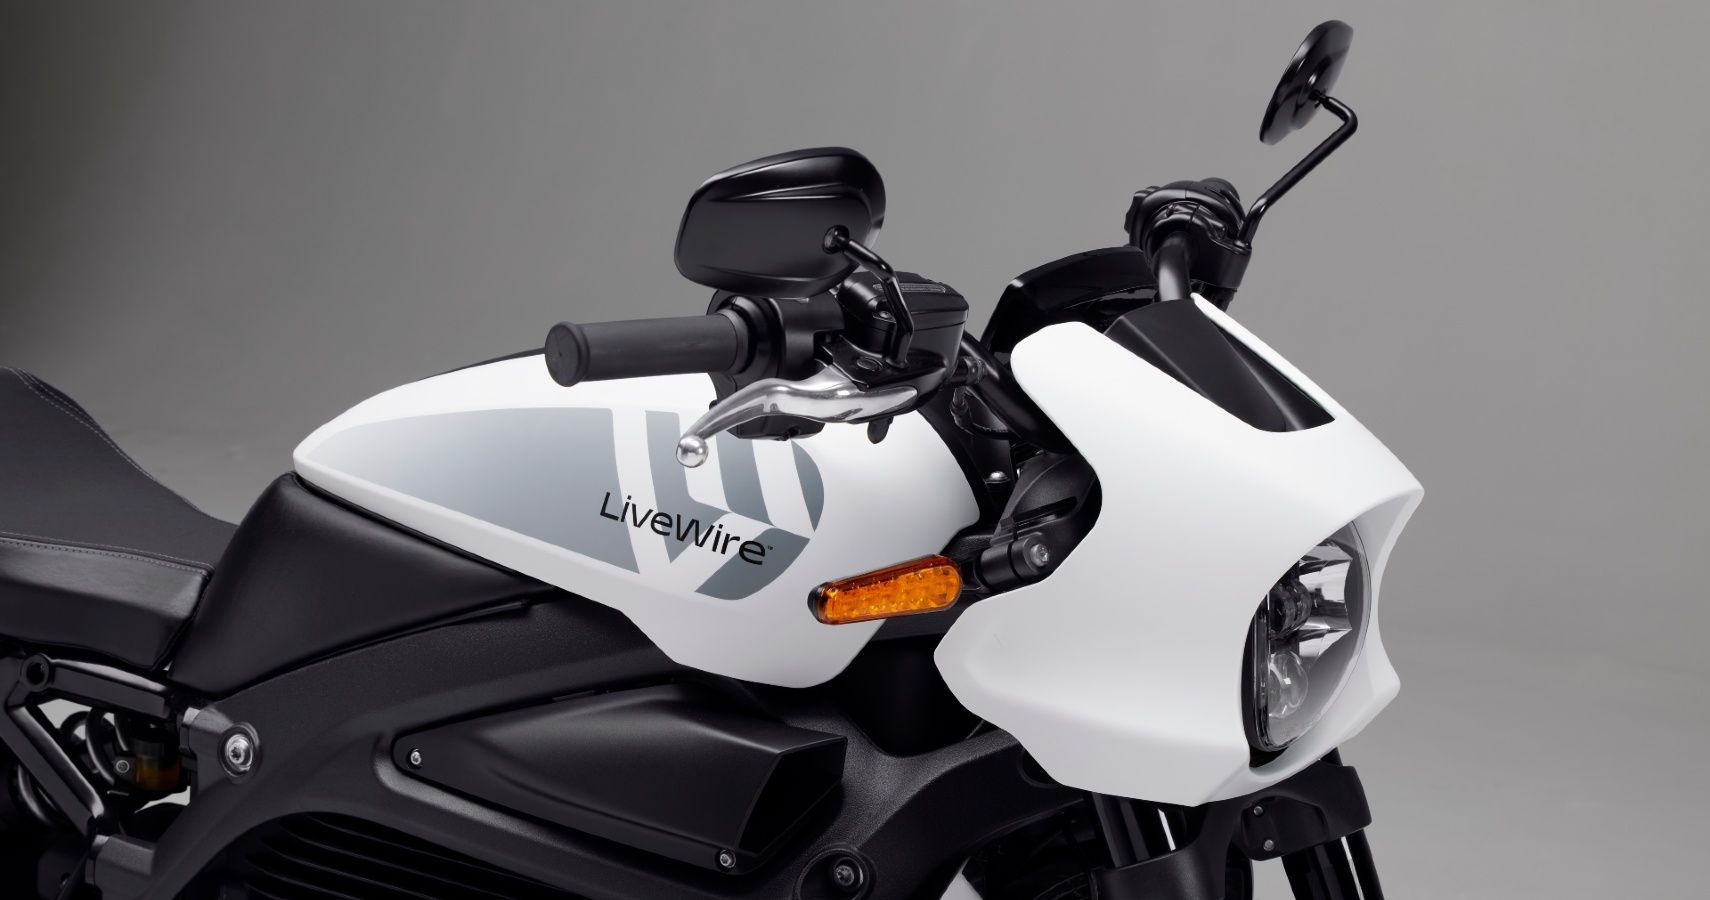 A LiveWire branded Harley-Davidson EV bike.